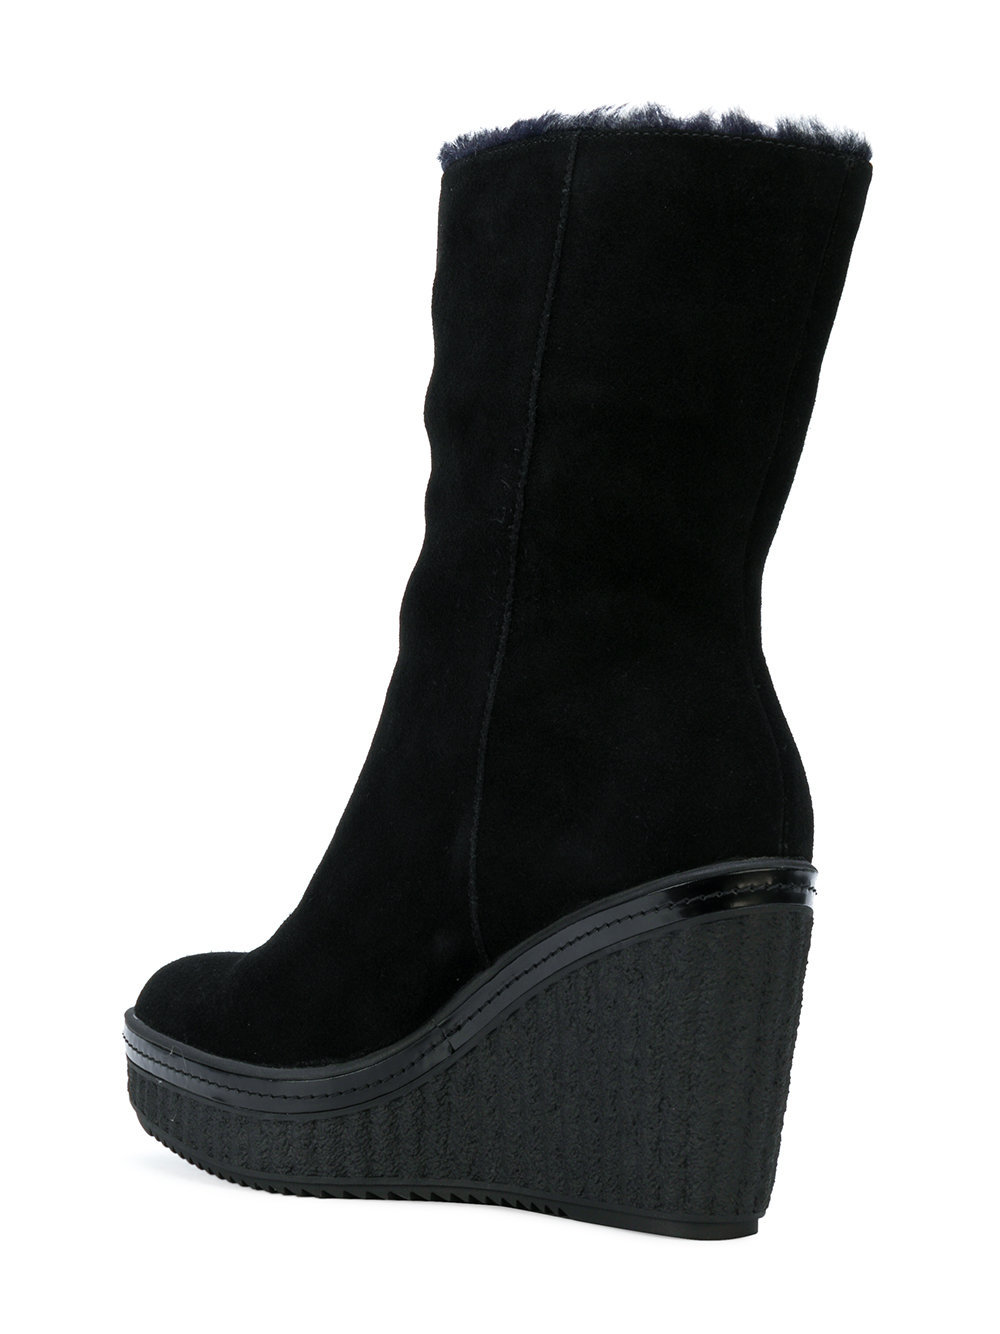 Calvin Klein Jeans Wedge Zip Boots, $109  | Lookastic